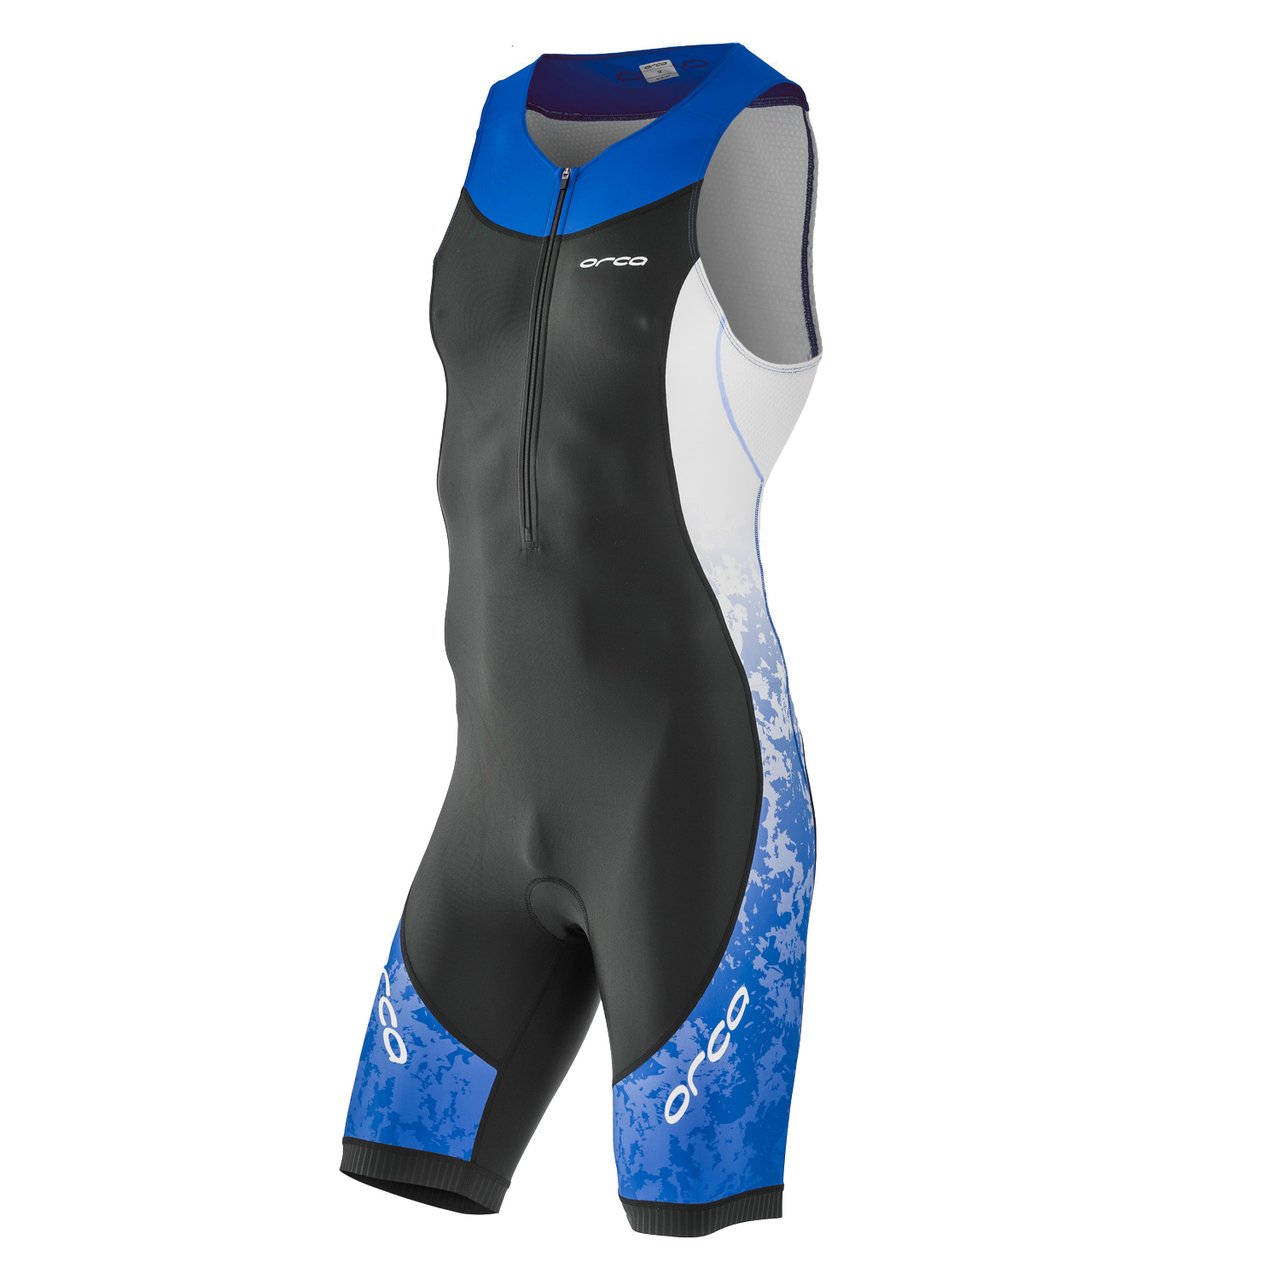 Комбинезон для триатлона Orca Core Race suit, 2018, M, черный/синий, HVC0 велосипедный рюкзак deuter race x с чехлом 44х24х18 12 л синий 32123 3515